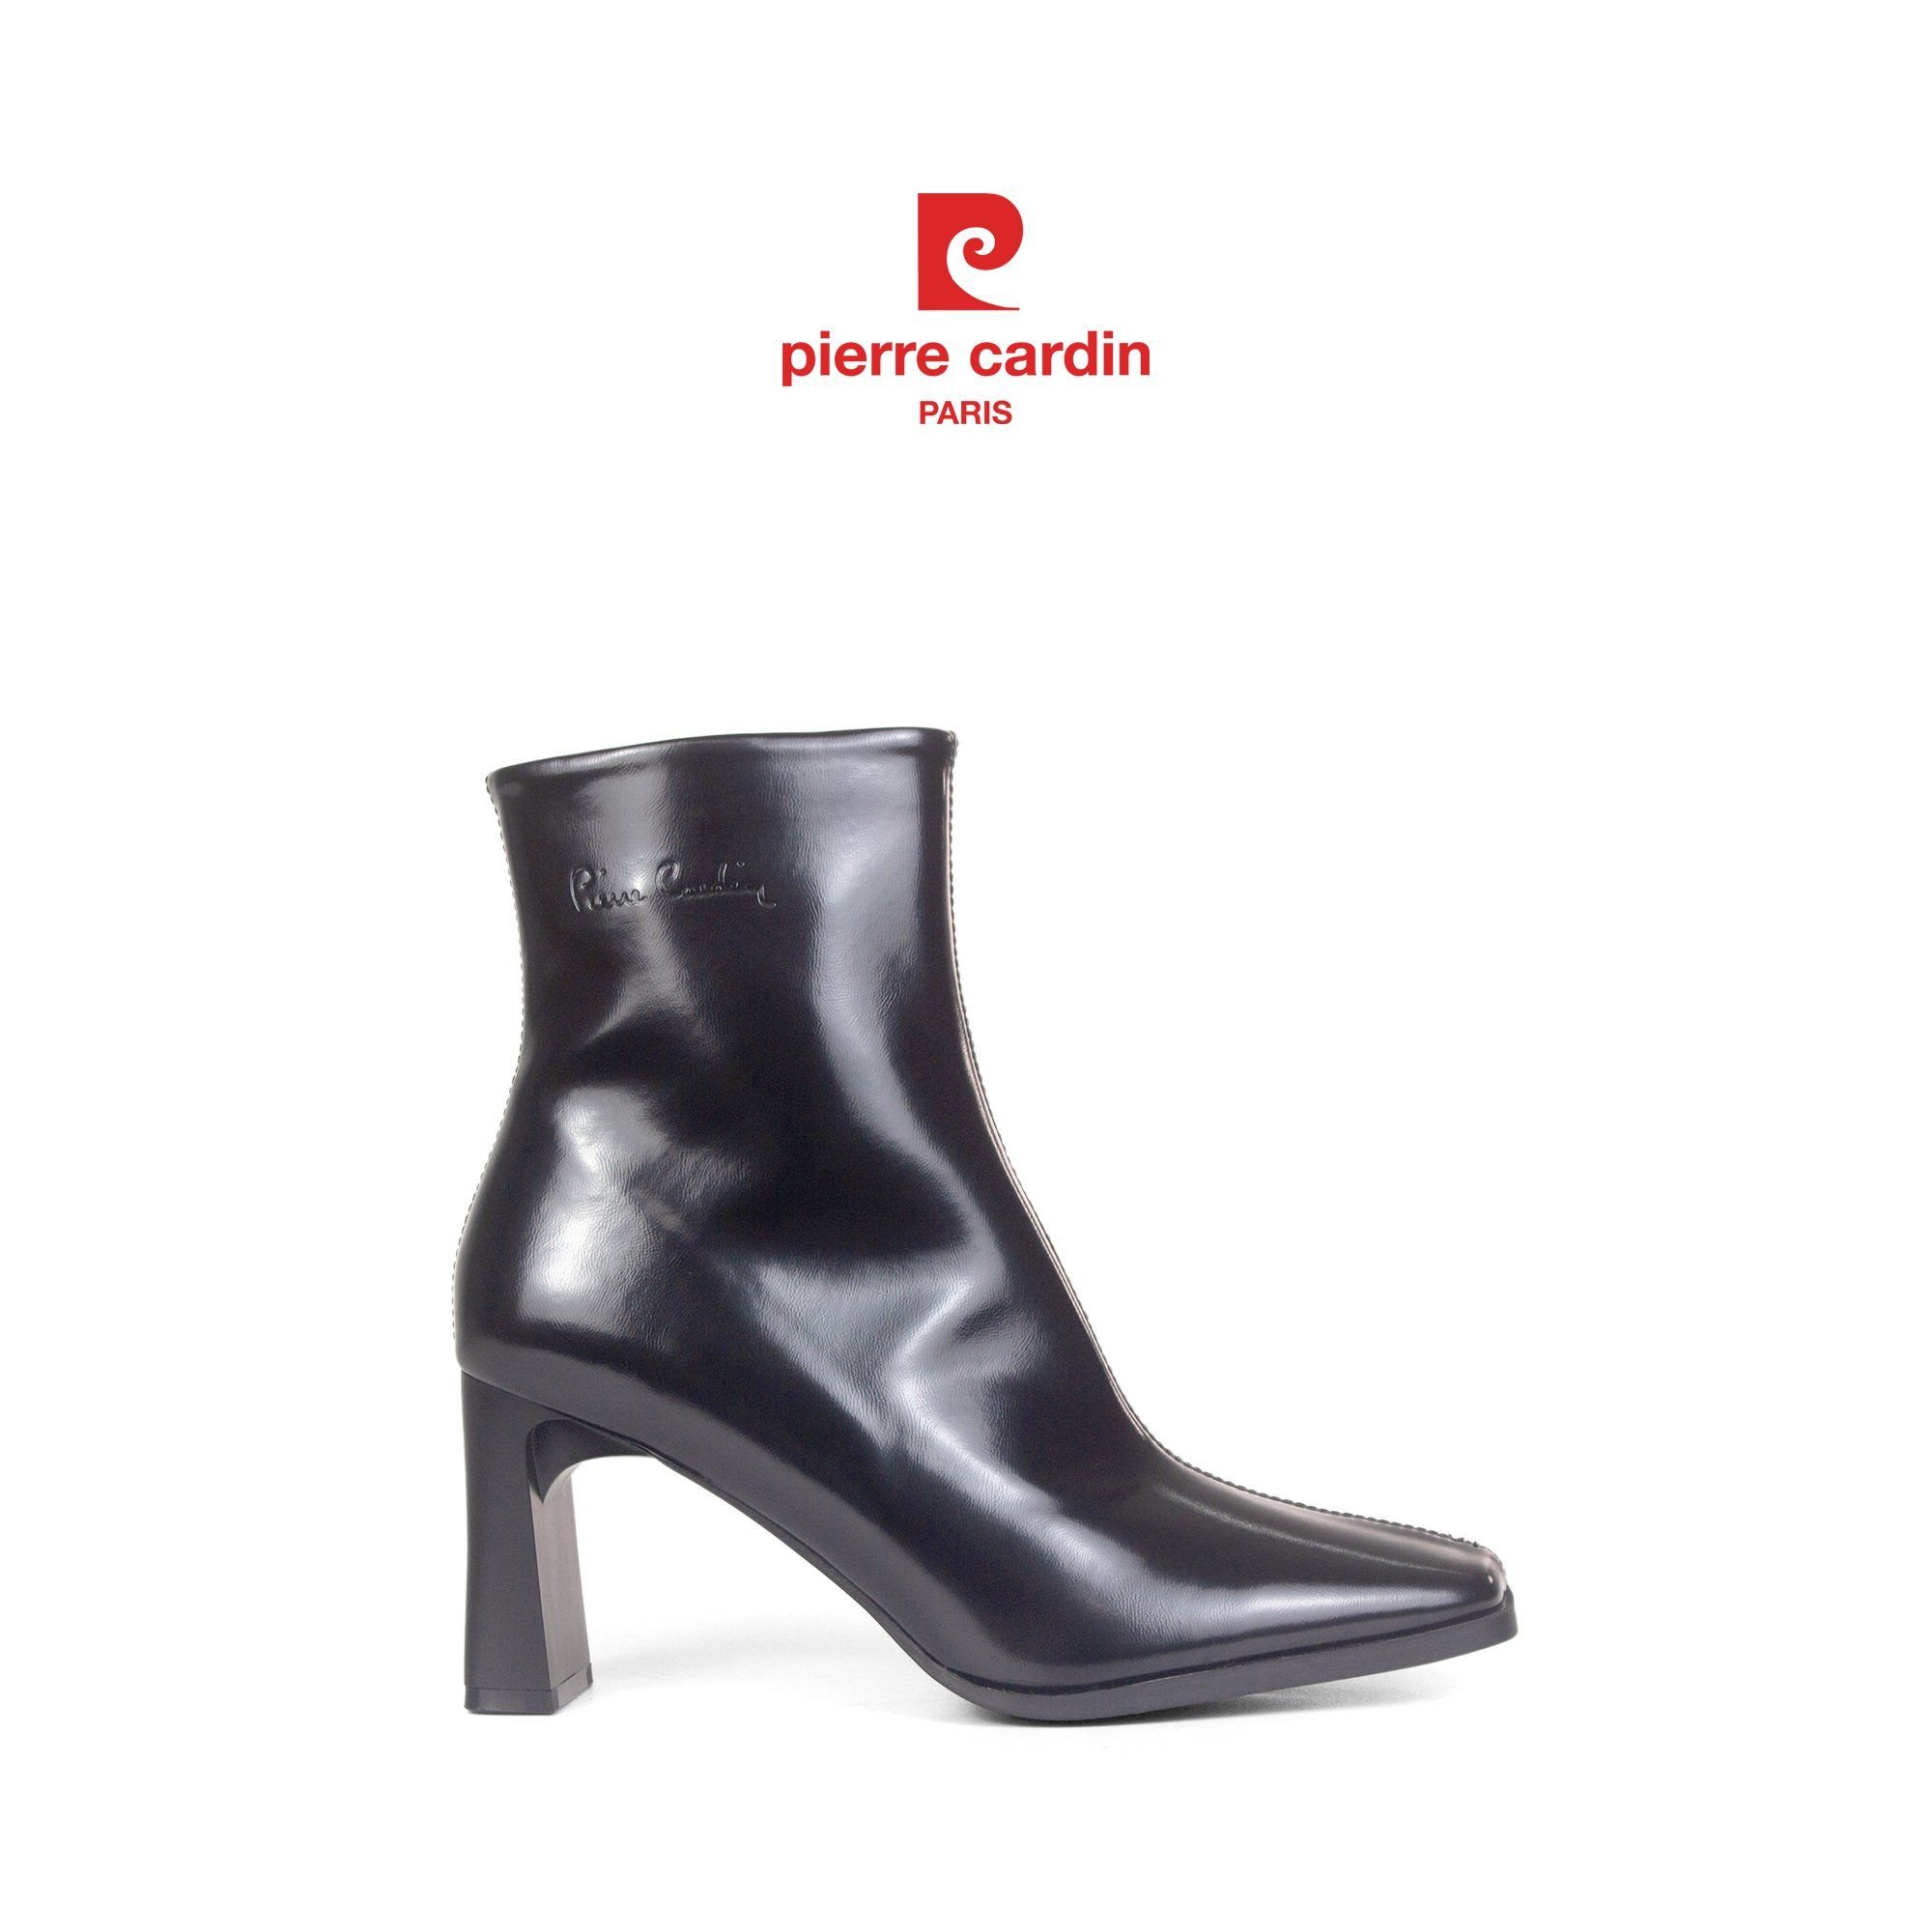 Hình 4: Mẫu giày boot cổ trung Pierre Cardin - PCWFWMH 245 (7cm).